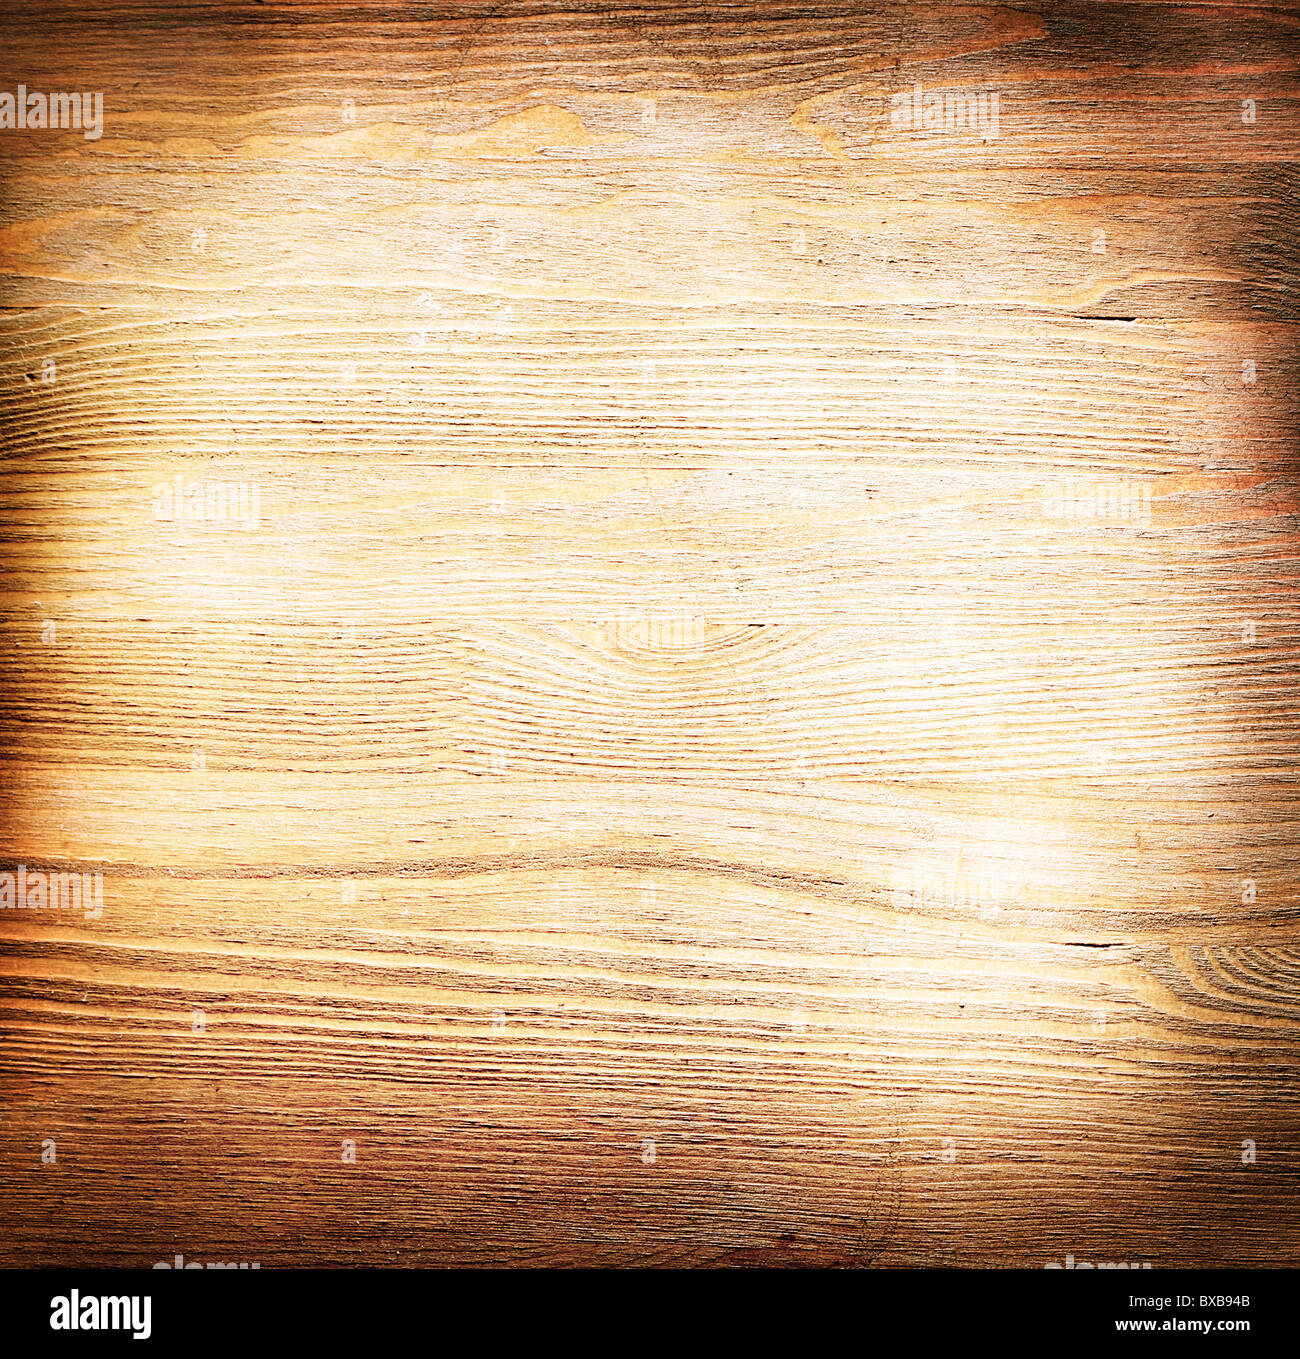 Immagine di sfondo nella forma di un vecchio superficie in legno Foto Stock